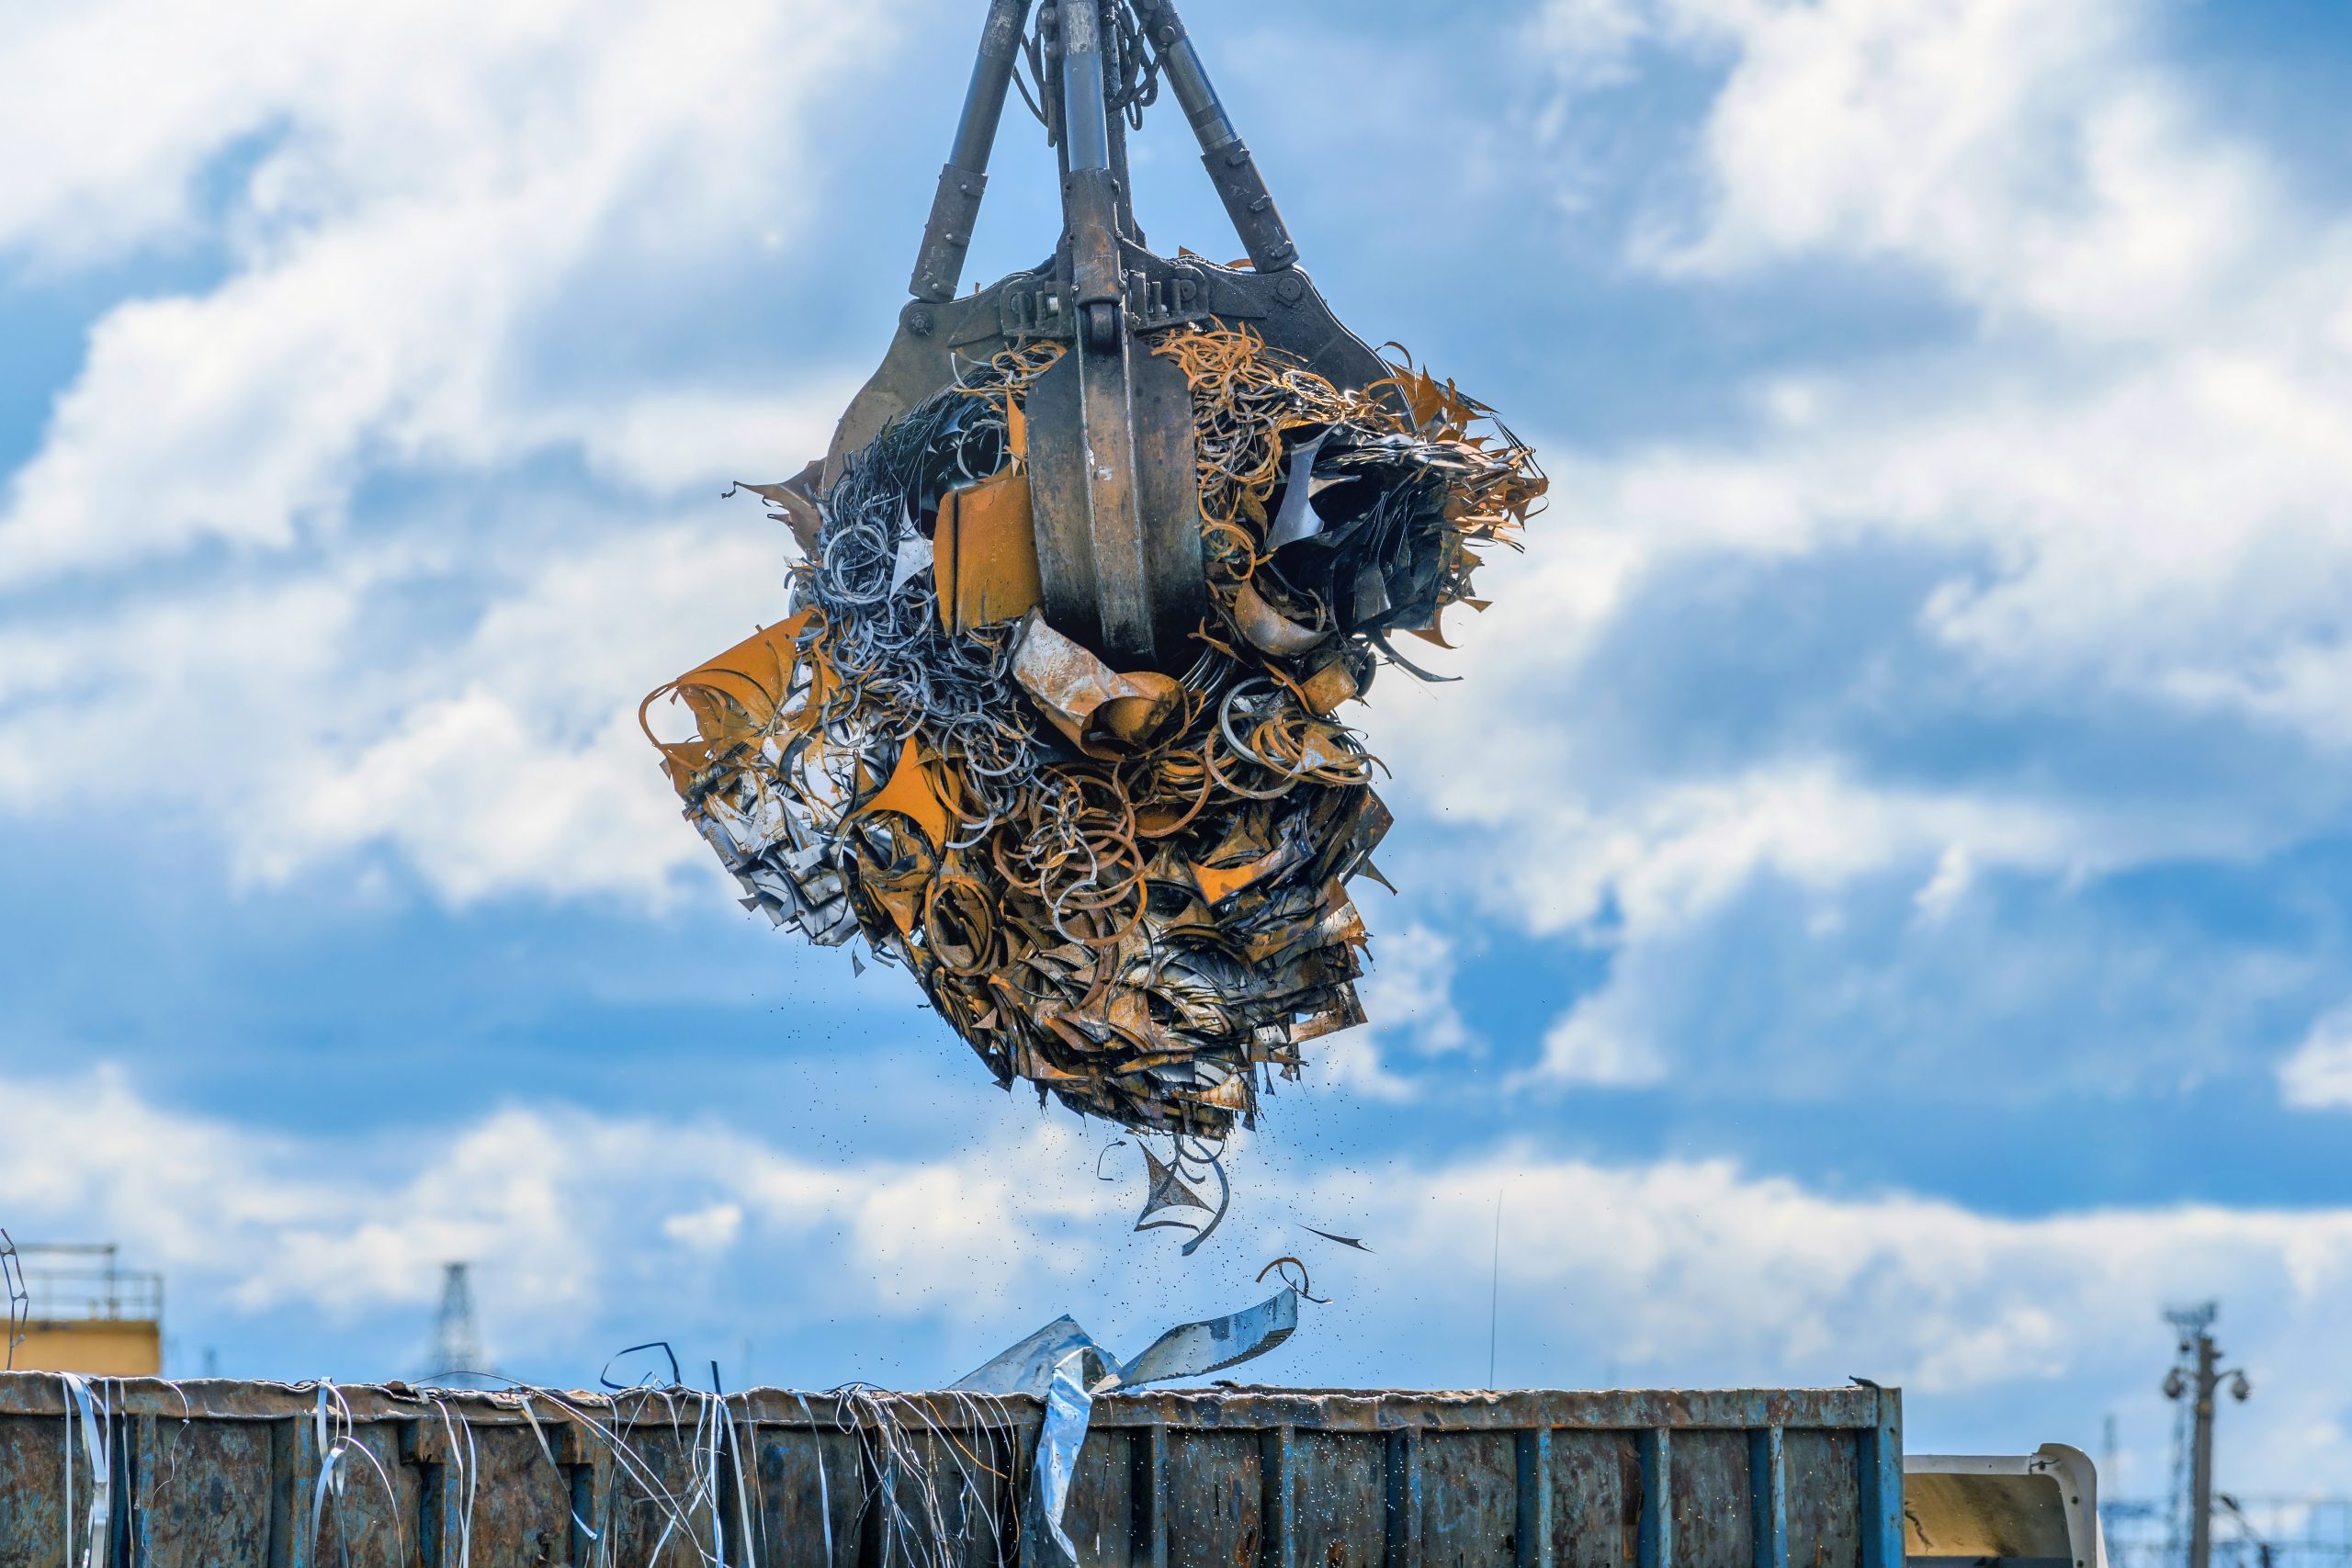 Crane lifts scrap metal